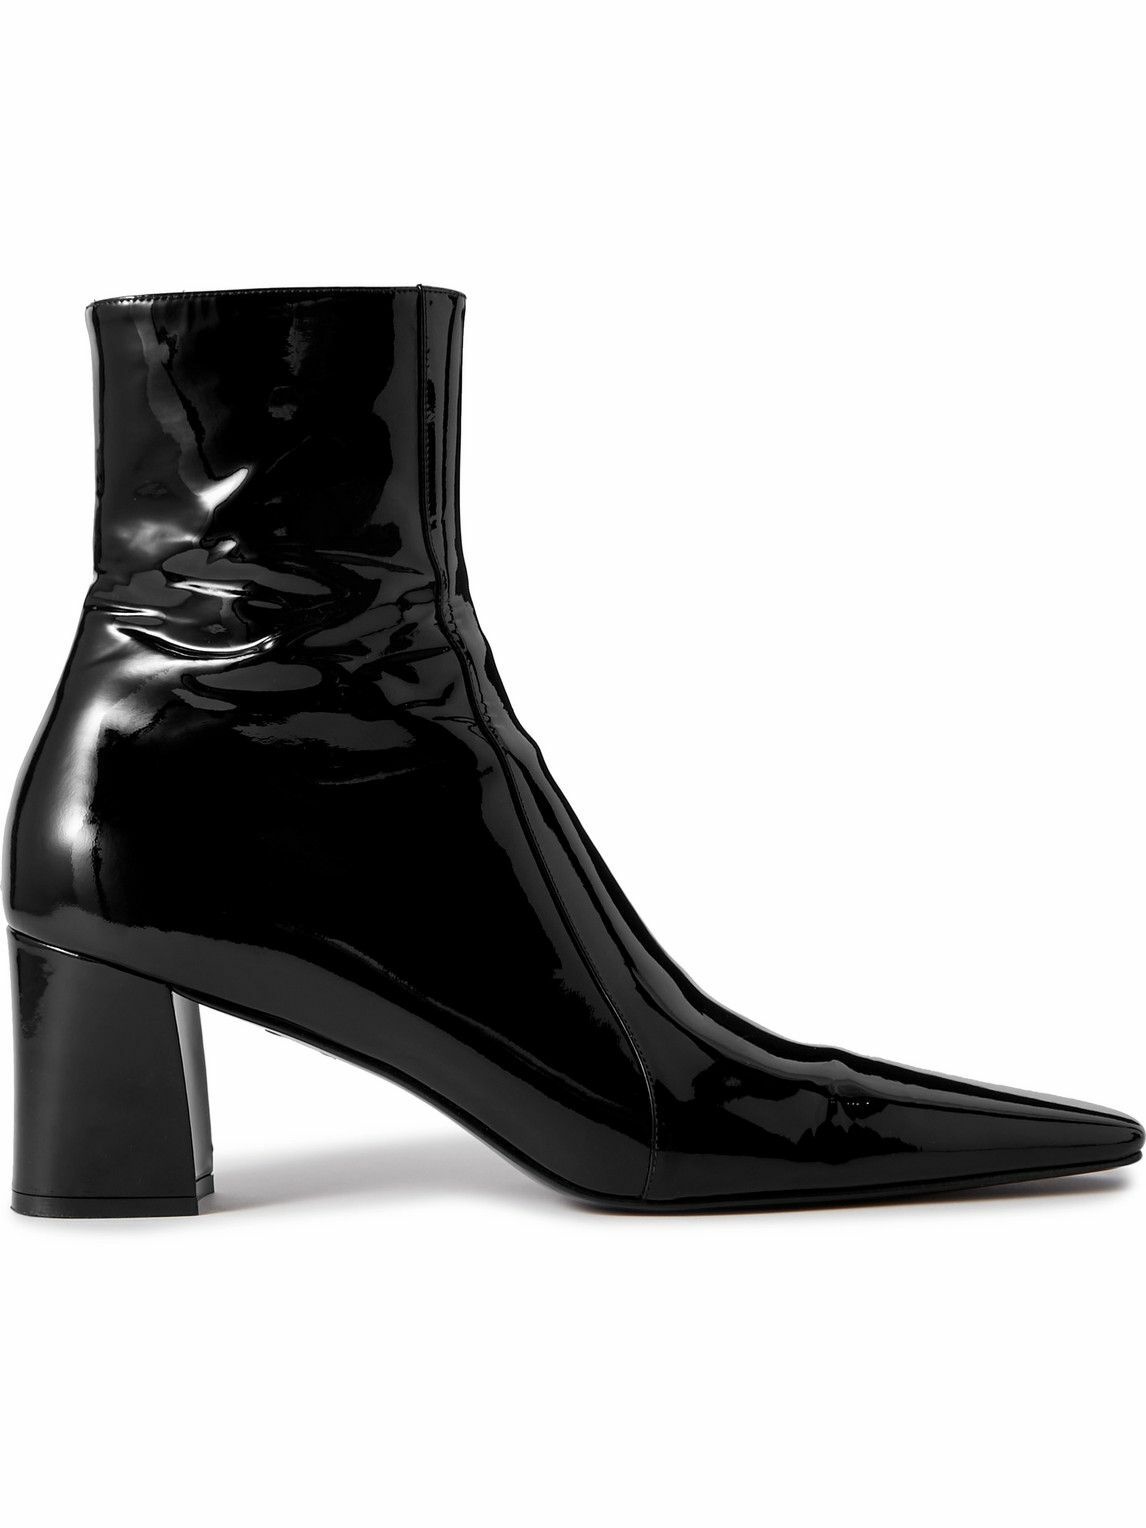 Photo: SAINT LAURENT - Patent-Leather Ankle Boots - Black